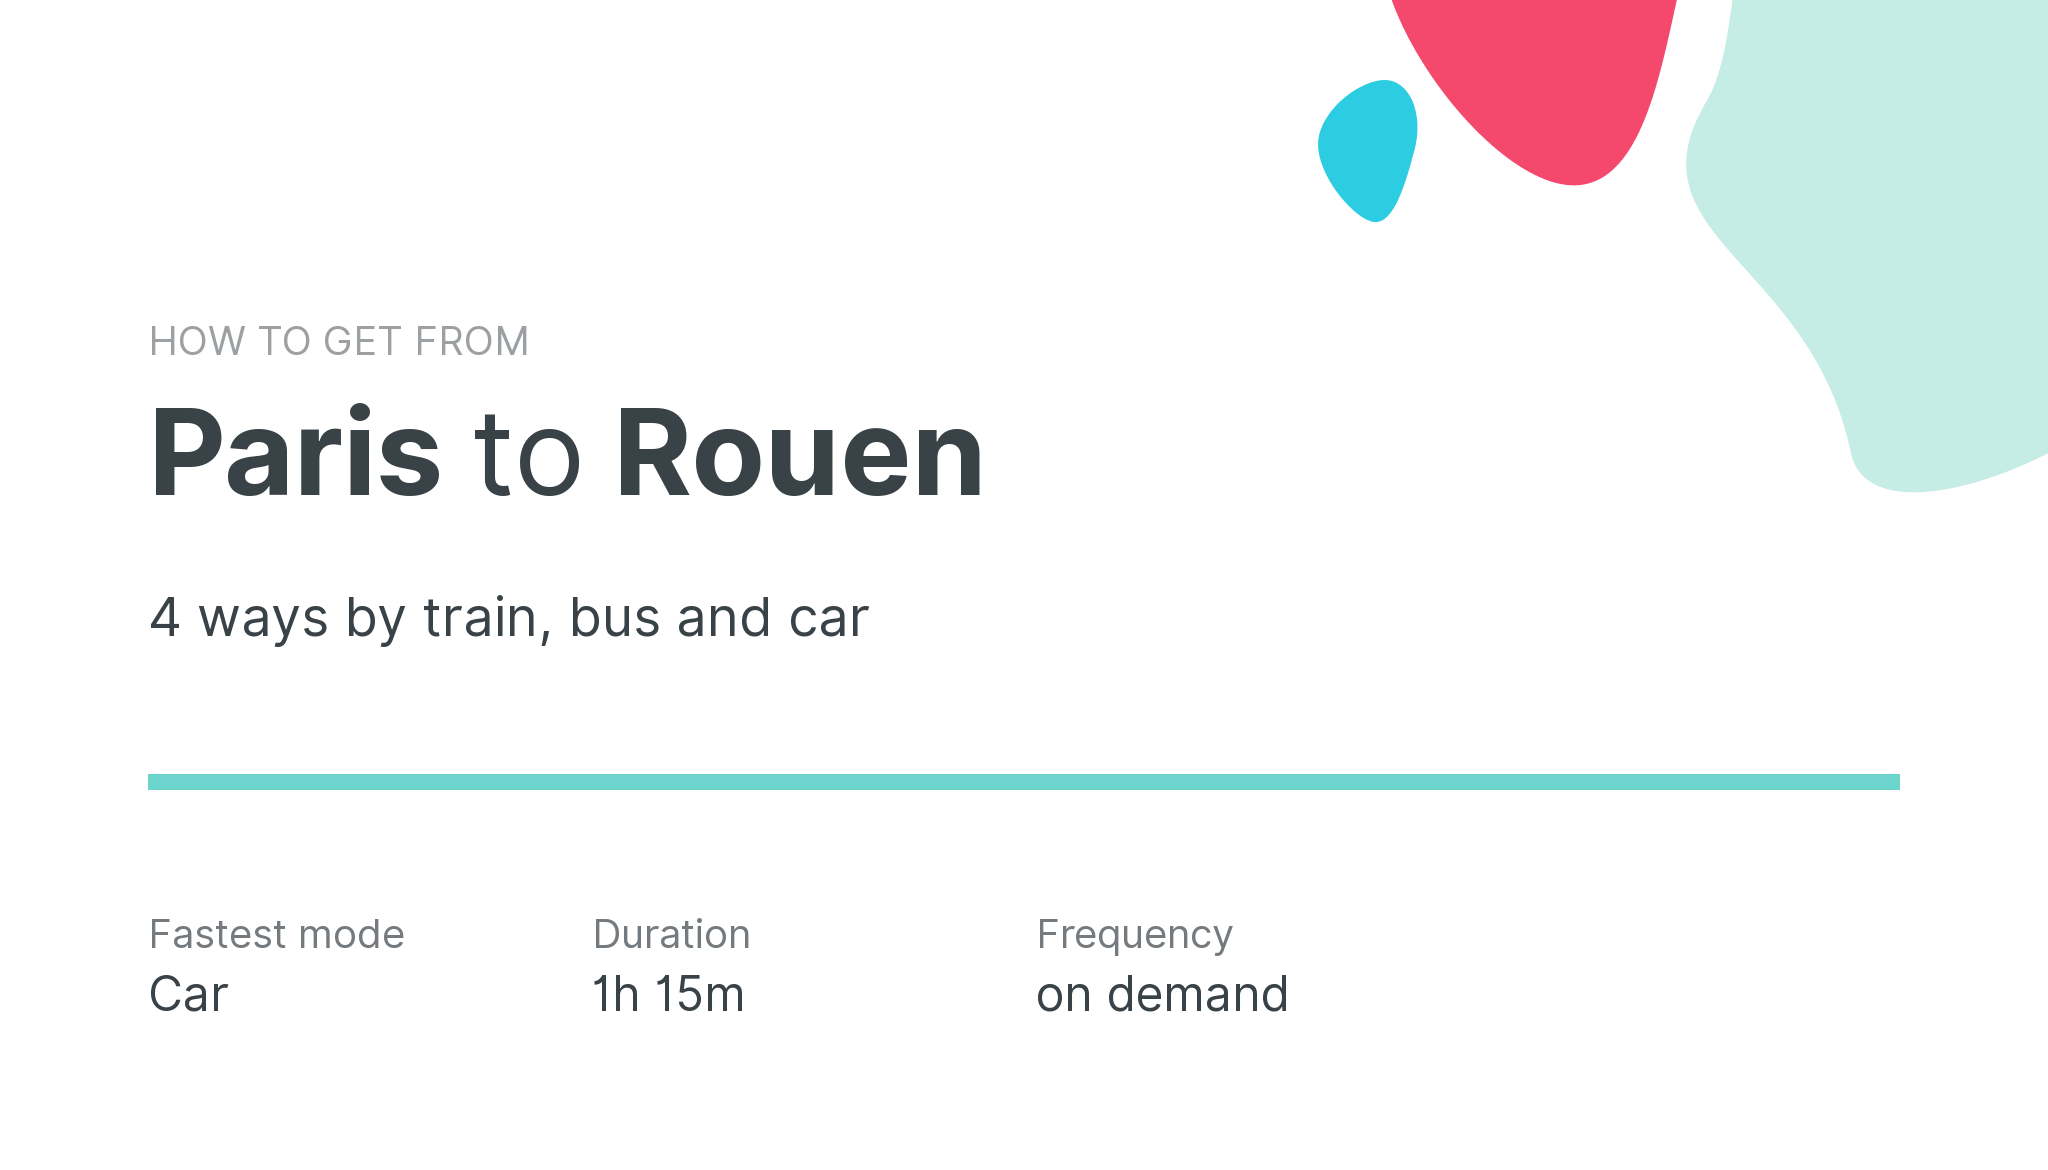 How do I get from Paris to Rouen